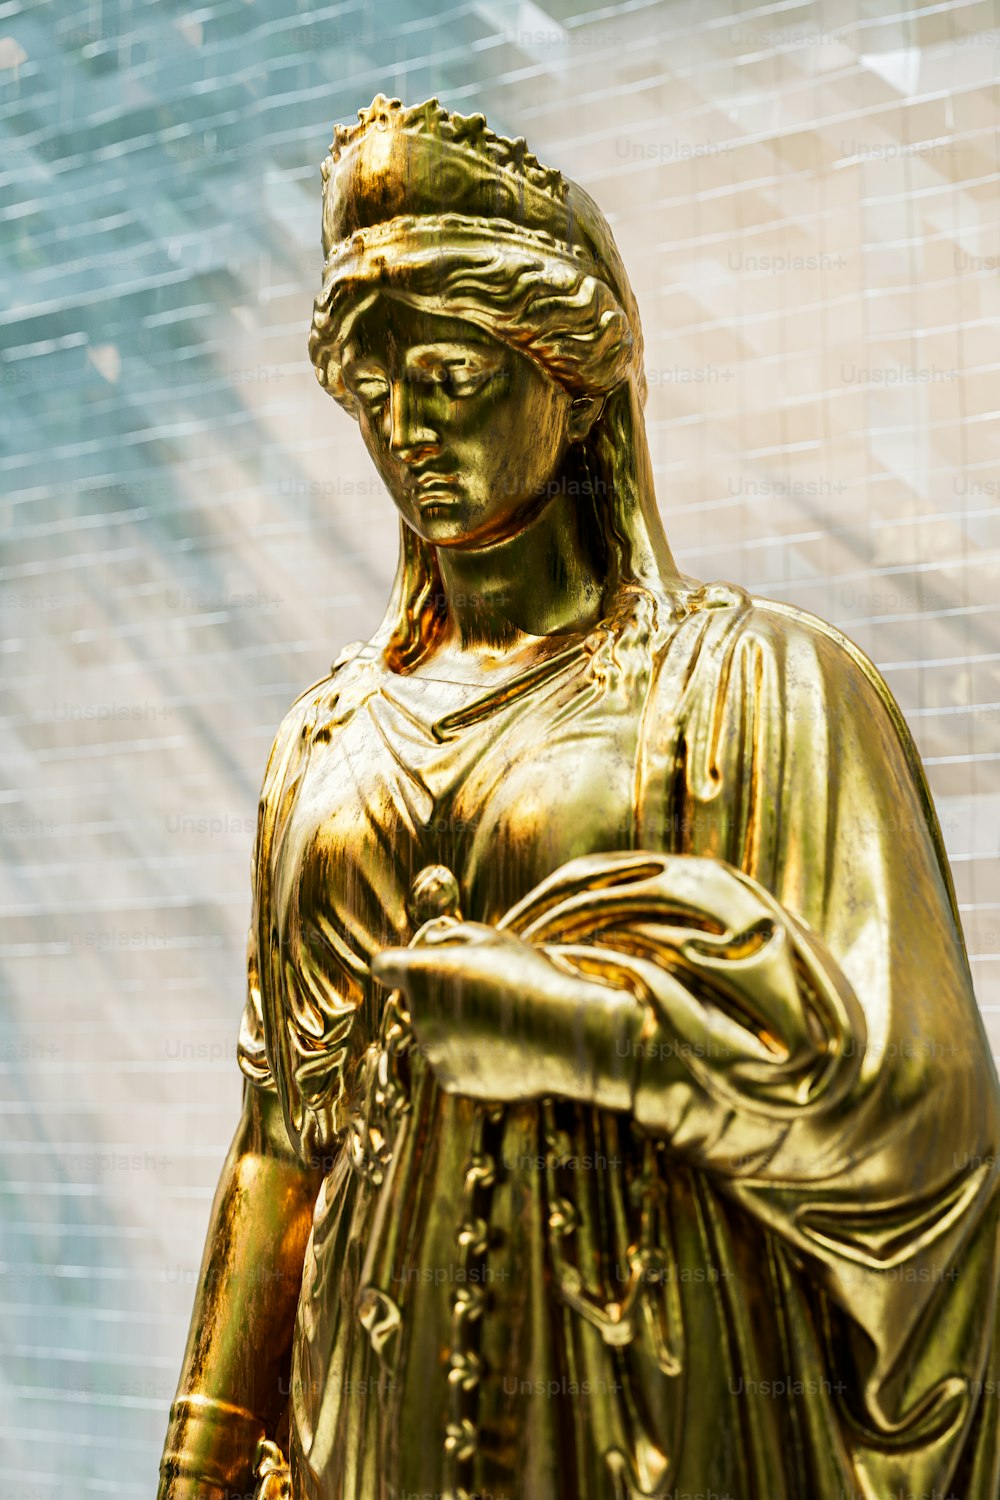 Una estatua de una mujer sosteniendo un teléfono celular